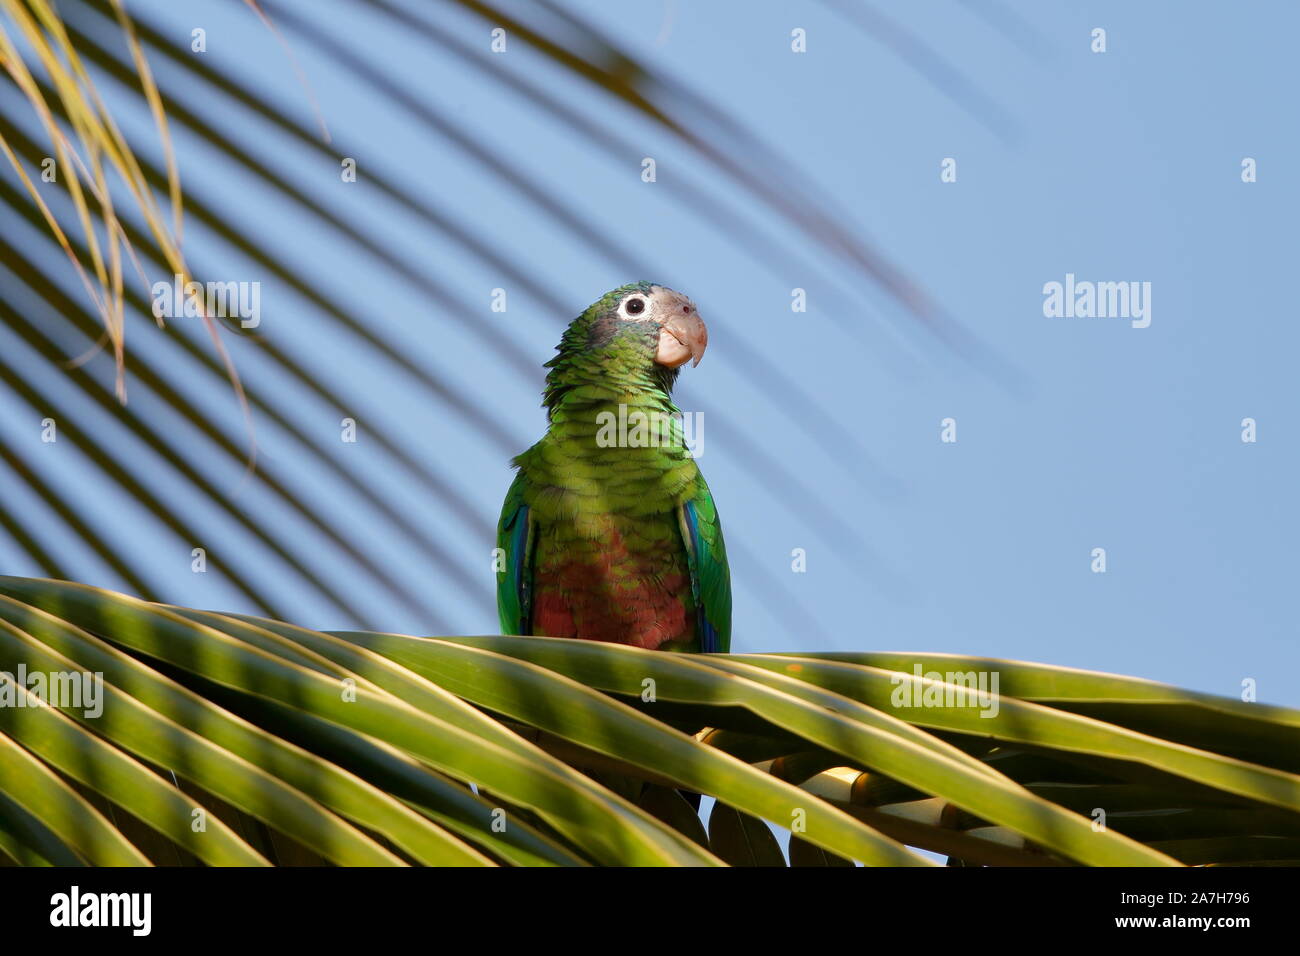 Die Hispaniolan amazon oder Hispaniolan Papagei ist eine Pflanzenart aus der Gattung der Papagei in der Familie Psittacidae. Es ist auf Hispaniola gefunden Stockfoto